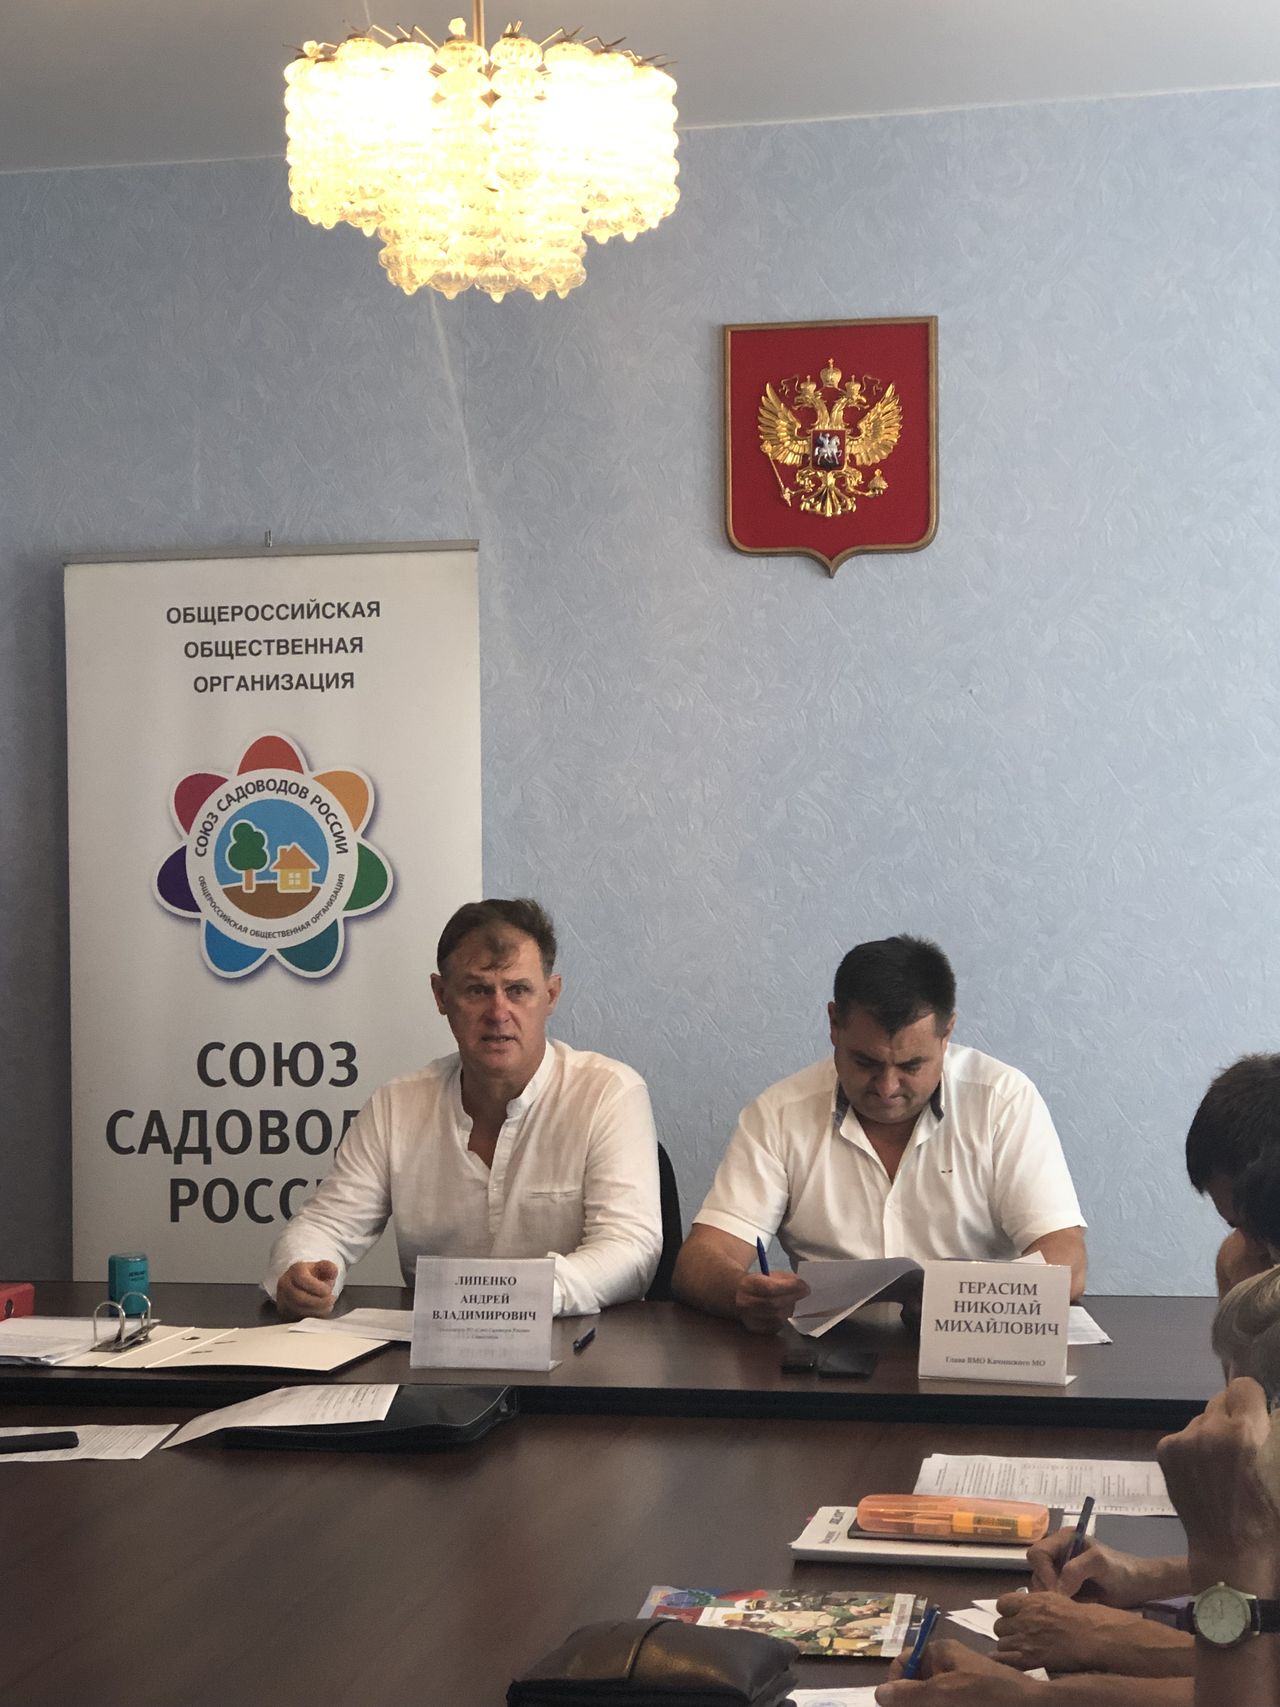 Podpisan dogovor o sotrudnichestve Kachinskim MO i OOO Sojuz sadovodov Rossii 01